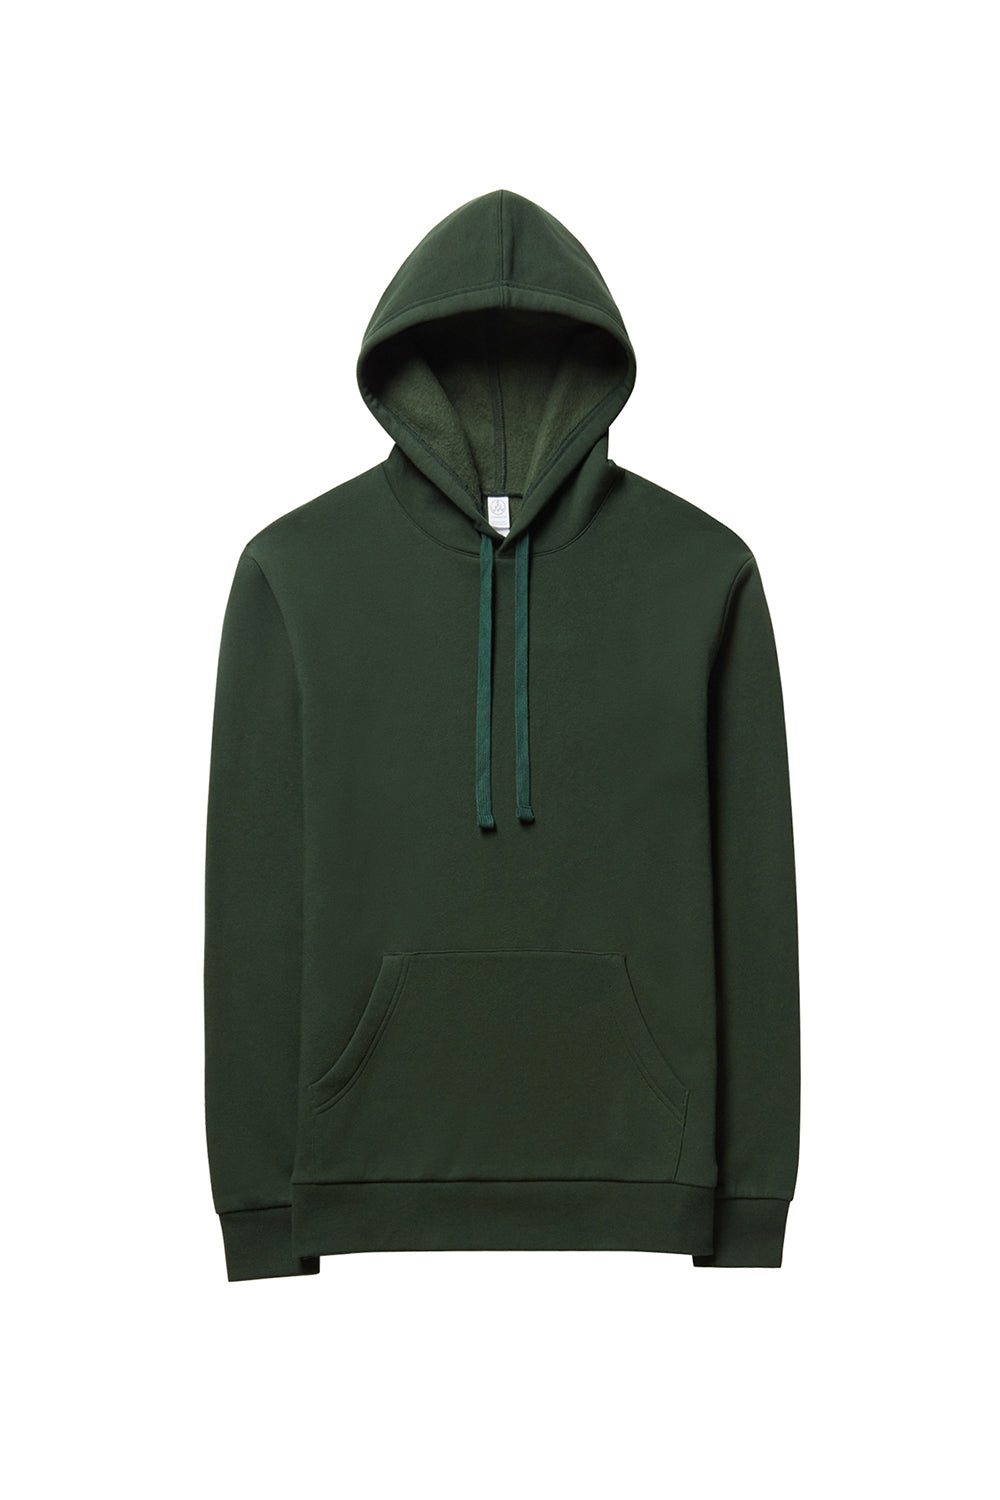 Alternative 8804PF Mens Eco Cozy Fleece Hooded Sweatshirt Hoodie Varisty Green Flat Front